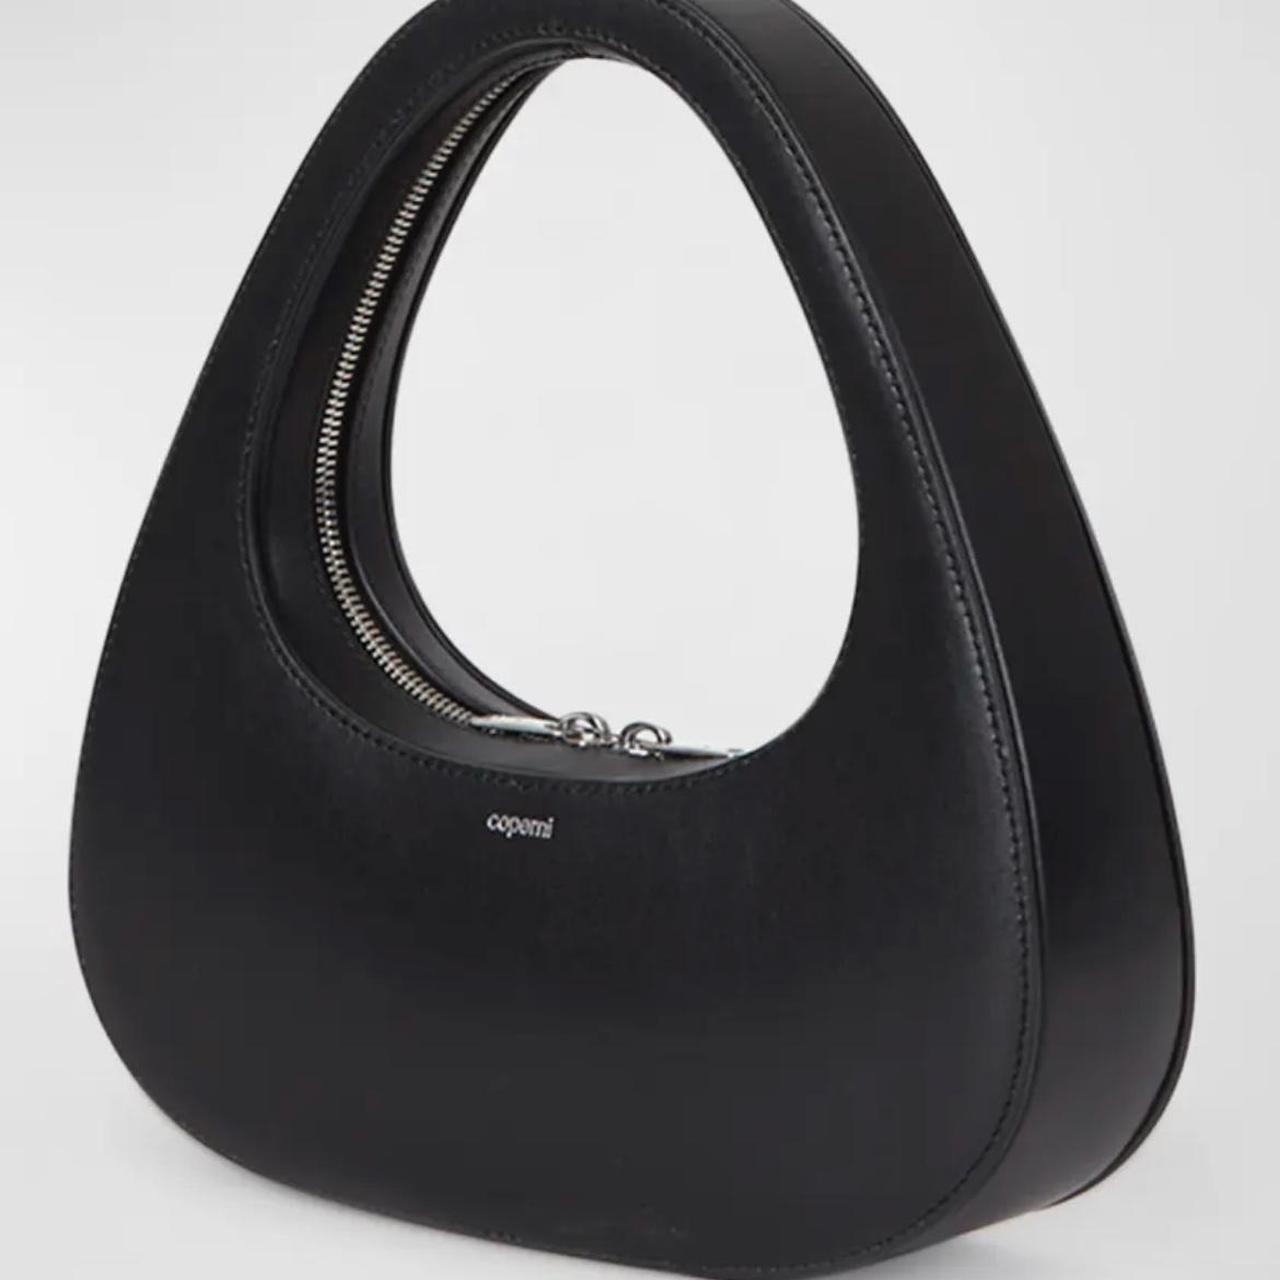 Coperni Women's Black Bag (4)